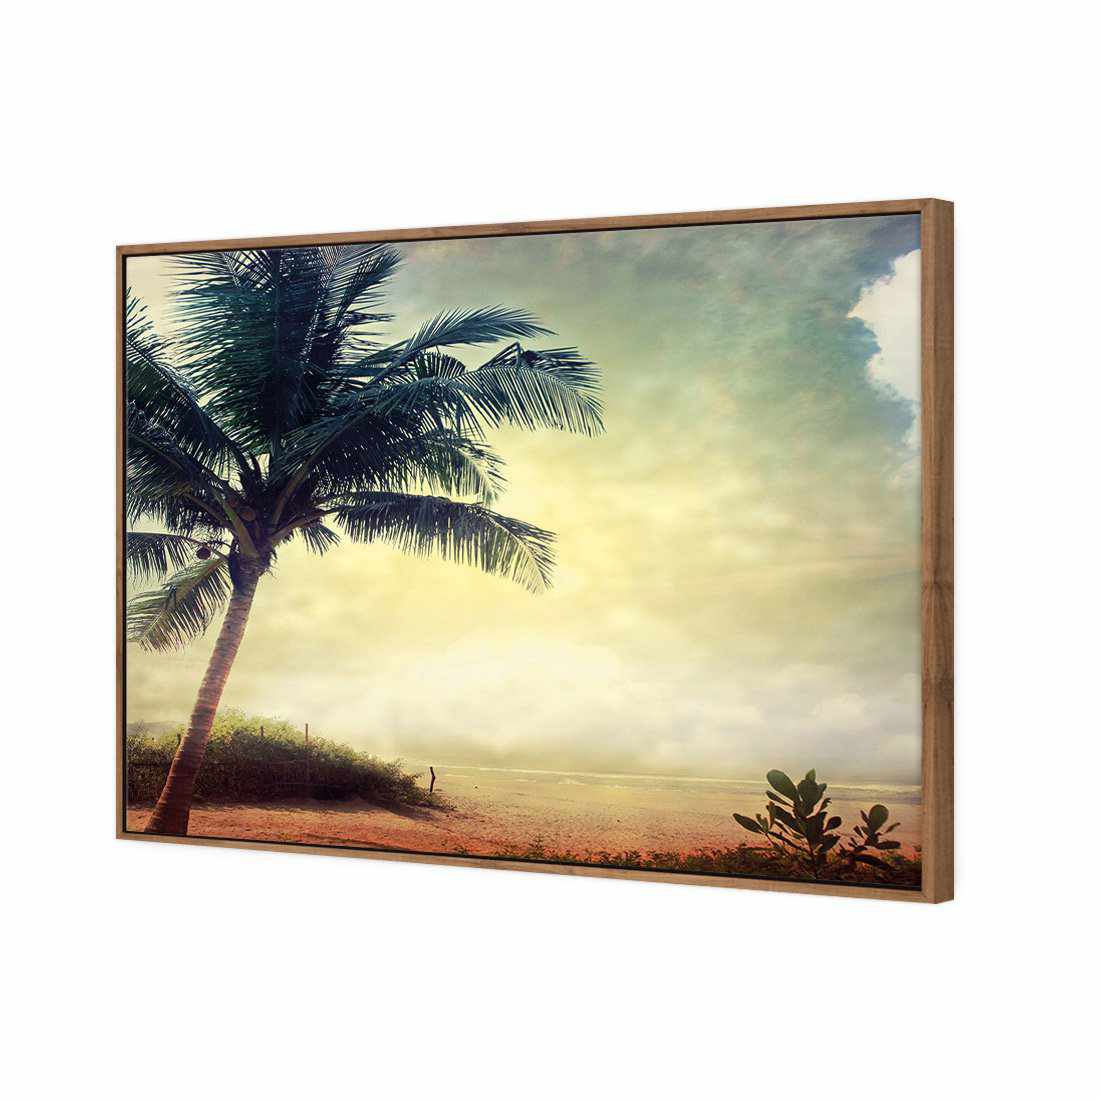 Vintage Palm Beach Canvas Art-Canvas-Wall Art Designs-45x30cm-Canvas - Natural Frame-Wall Art Designs